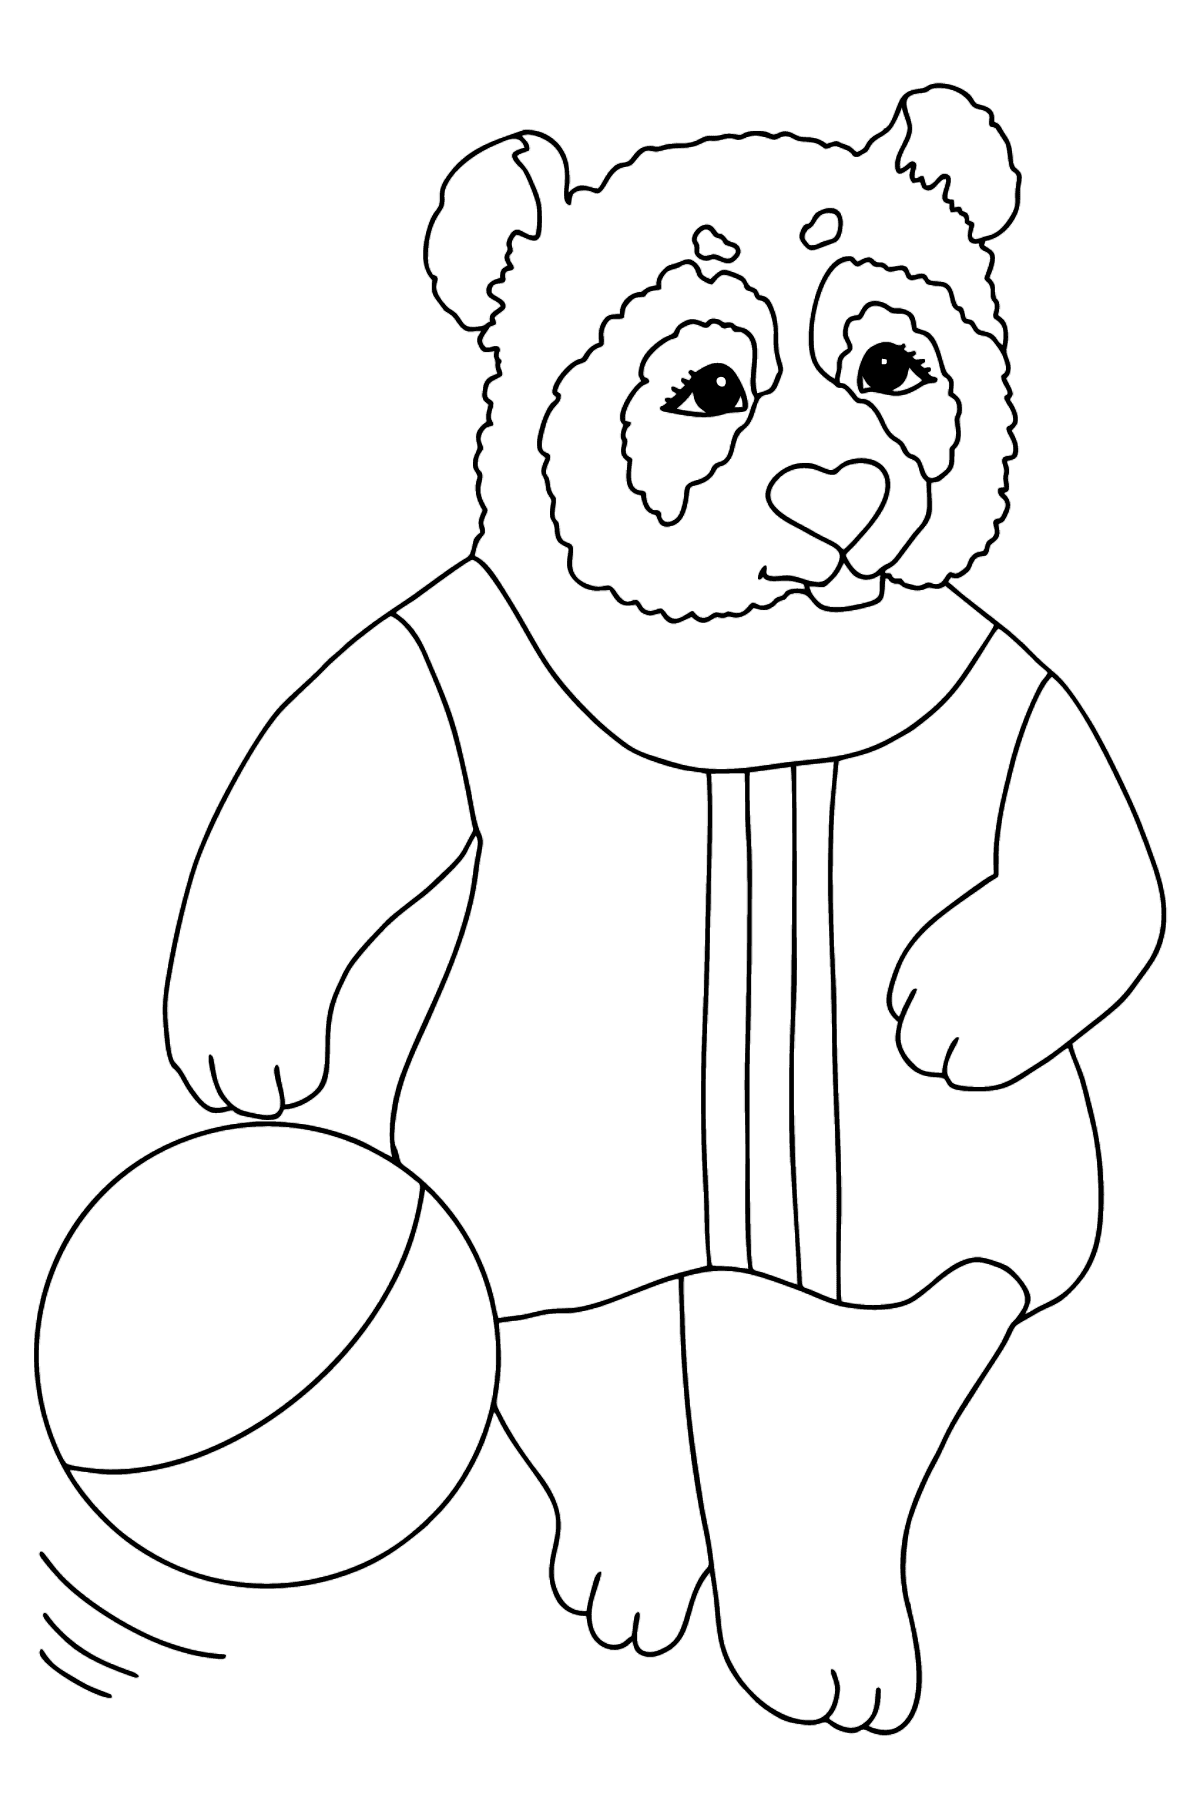 Boyama sayfası bebekler için panda (zor) - Boyamalar çocuklar için